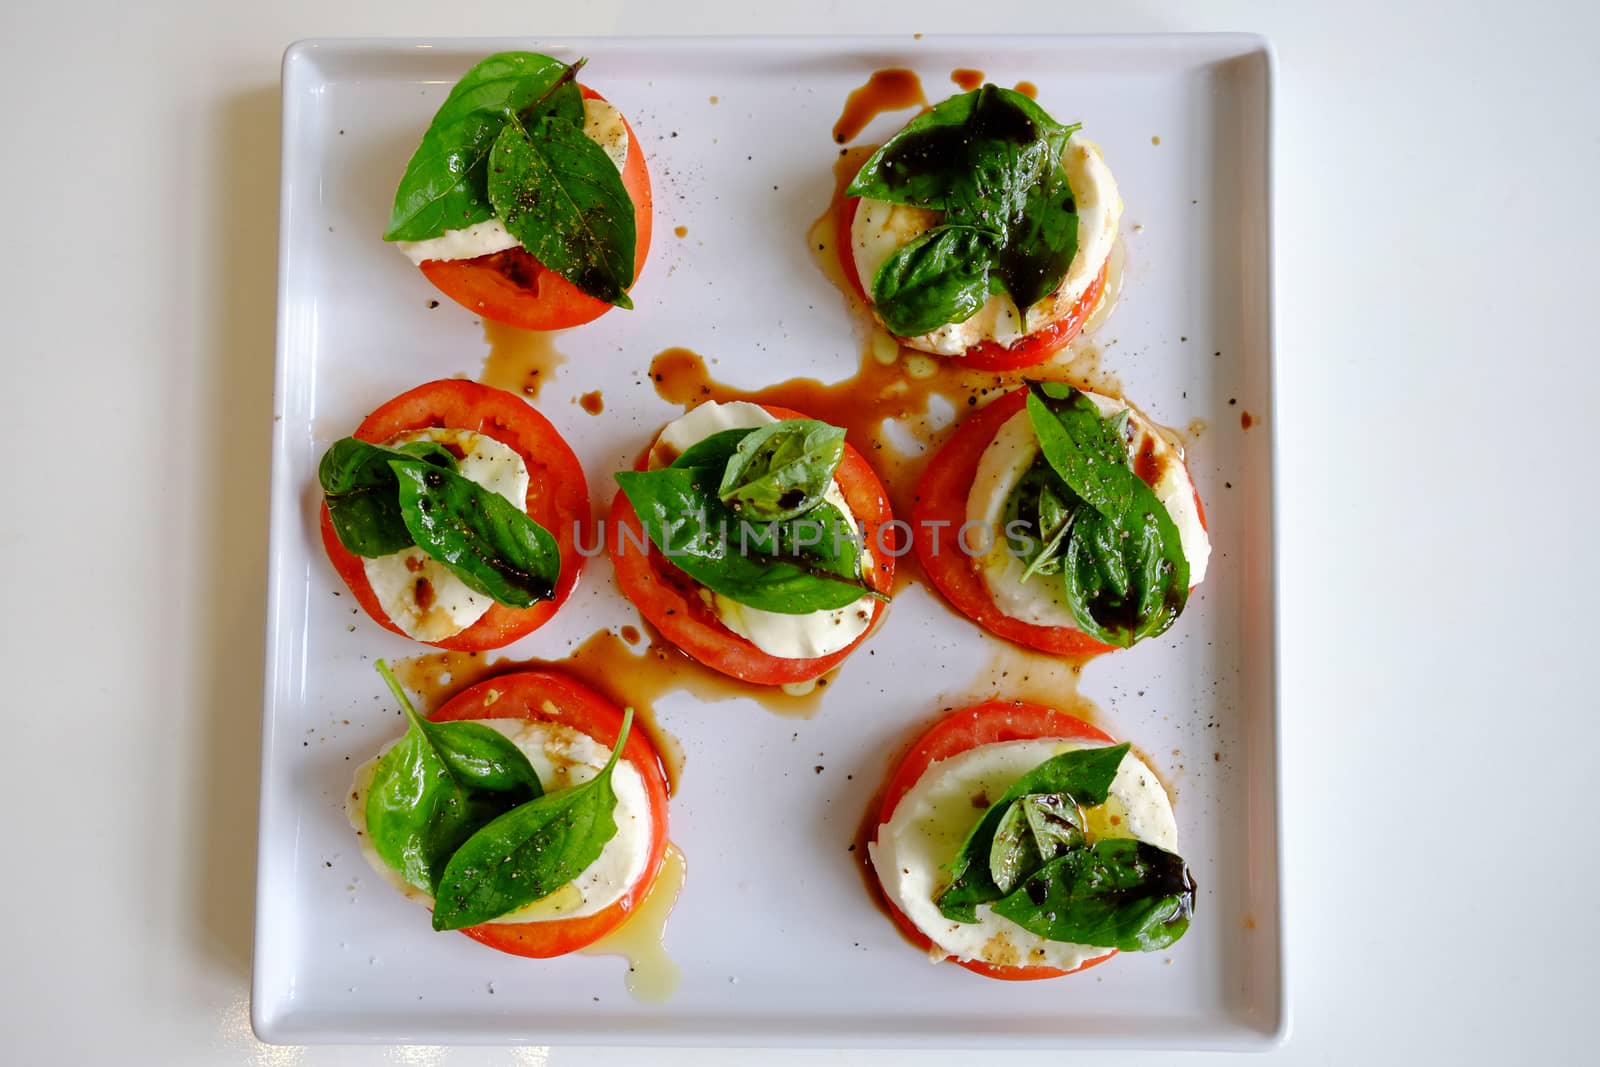 Tomato, basil and bocconcini salad